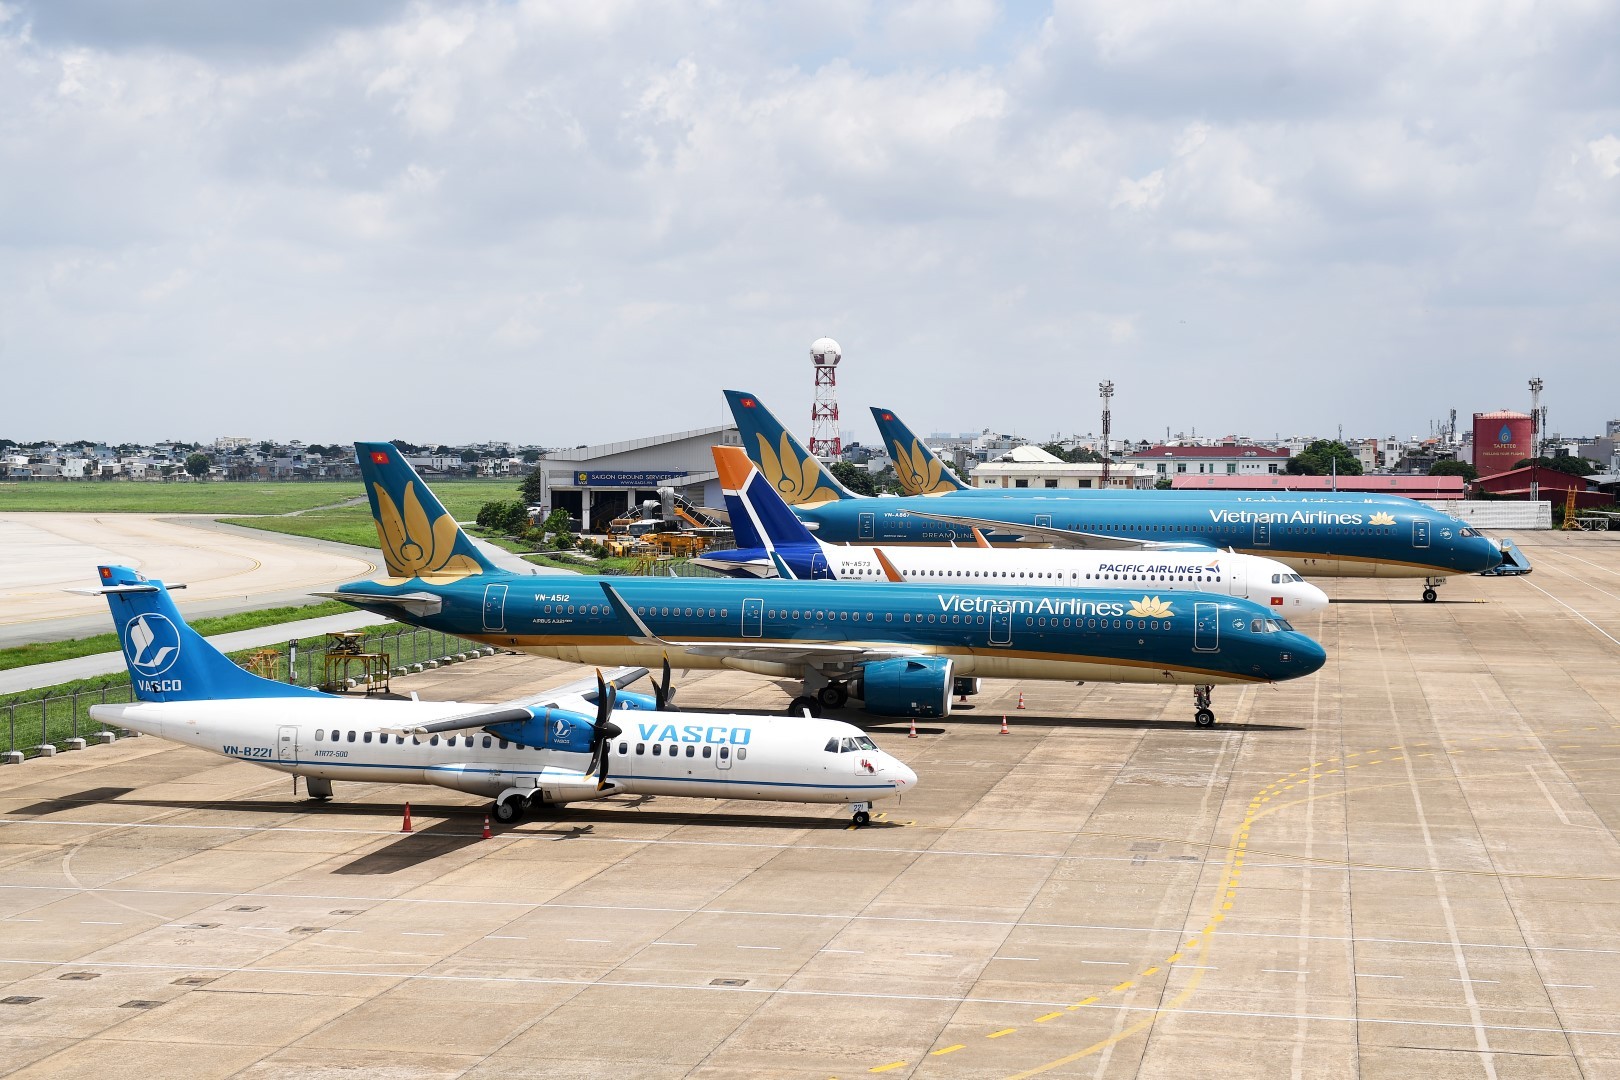 Hồ sơ doanh nghiệp - Vietnam Airlines lỗ 3 năm liên tiếp, vốn chủ sở hữu âm hơn 10.000 tỷ đồng